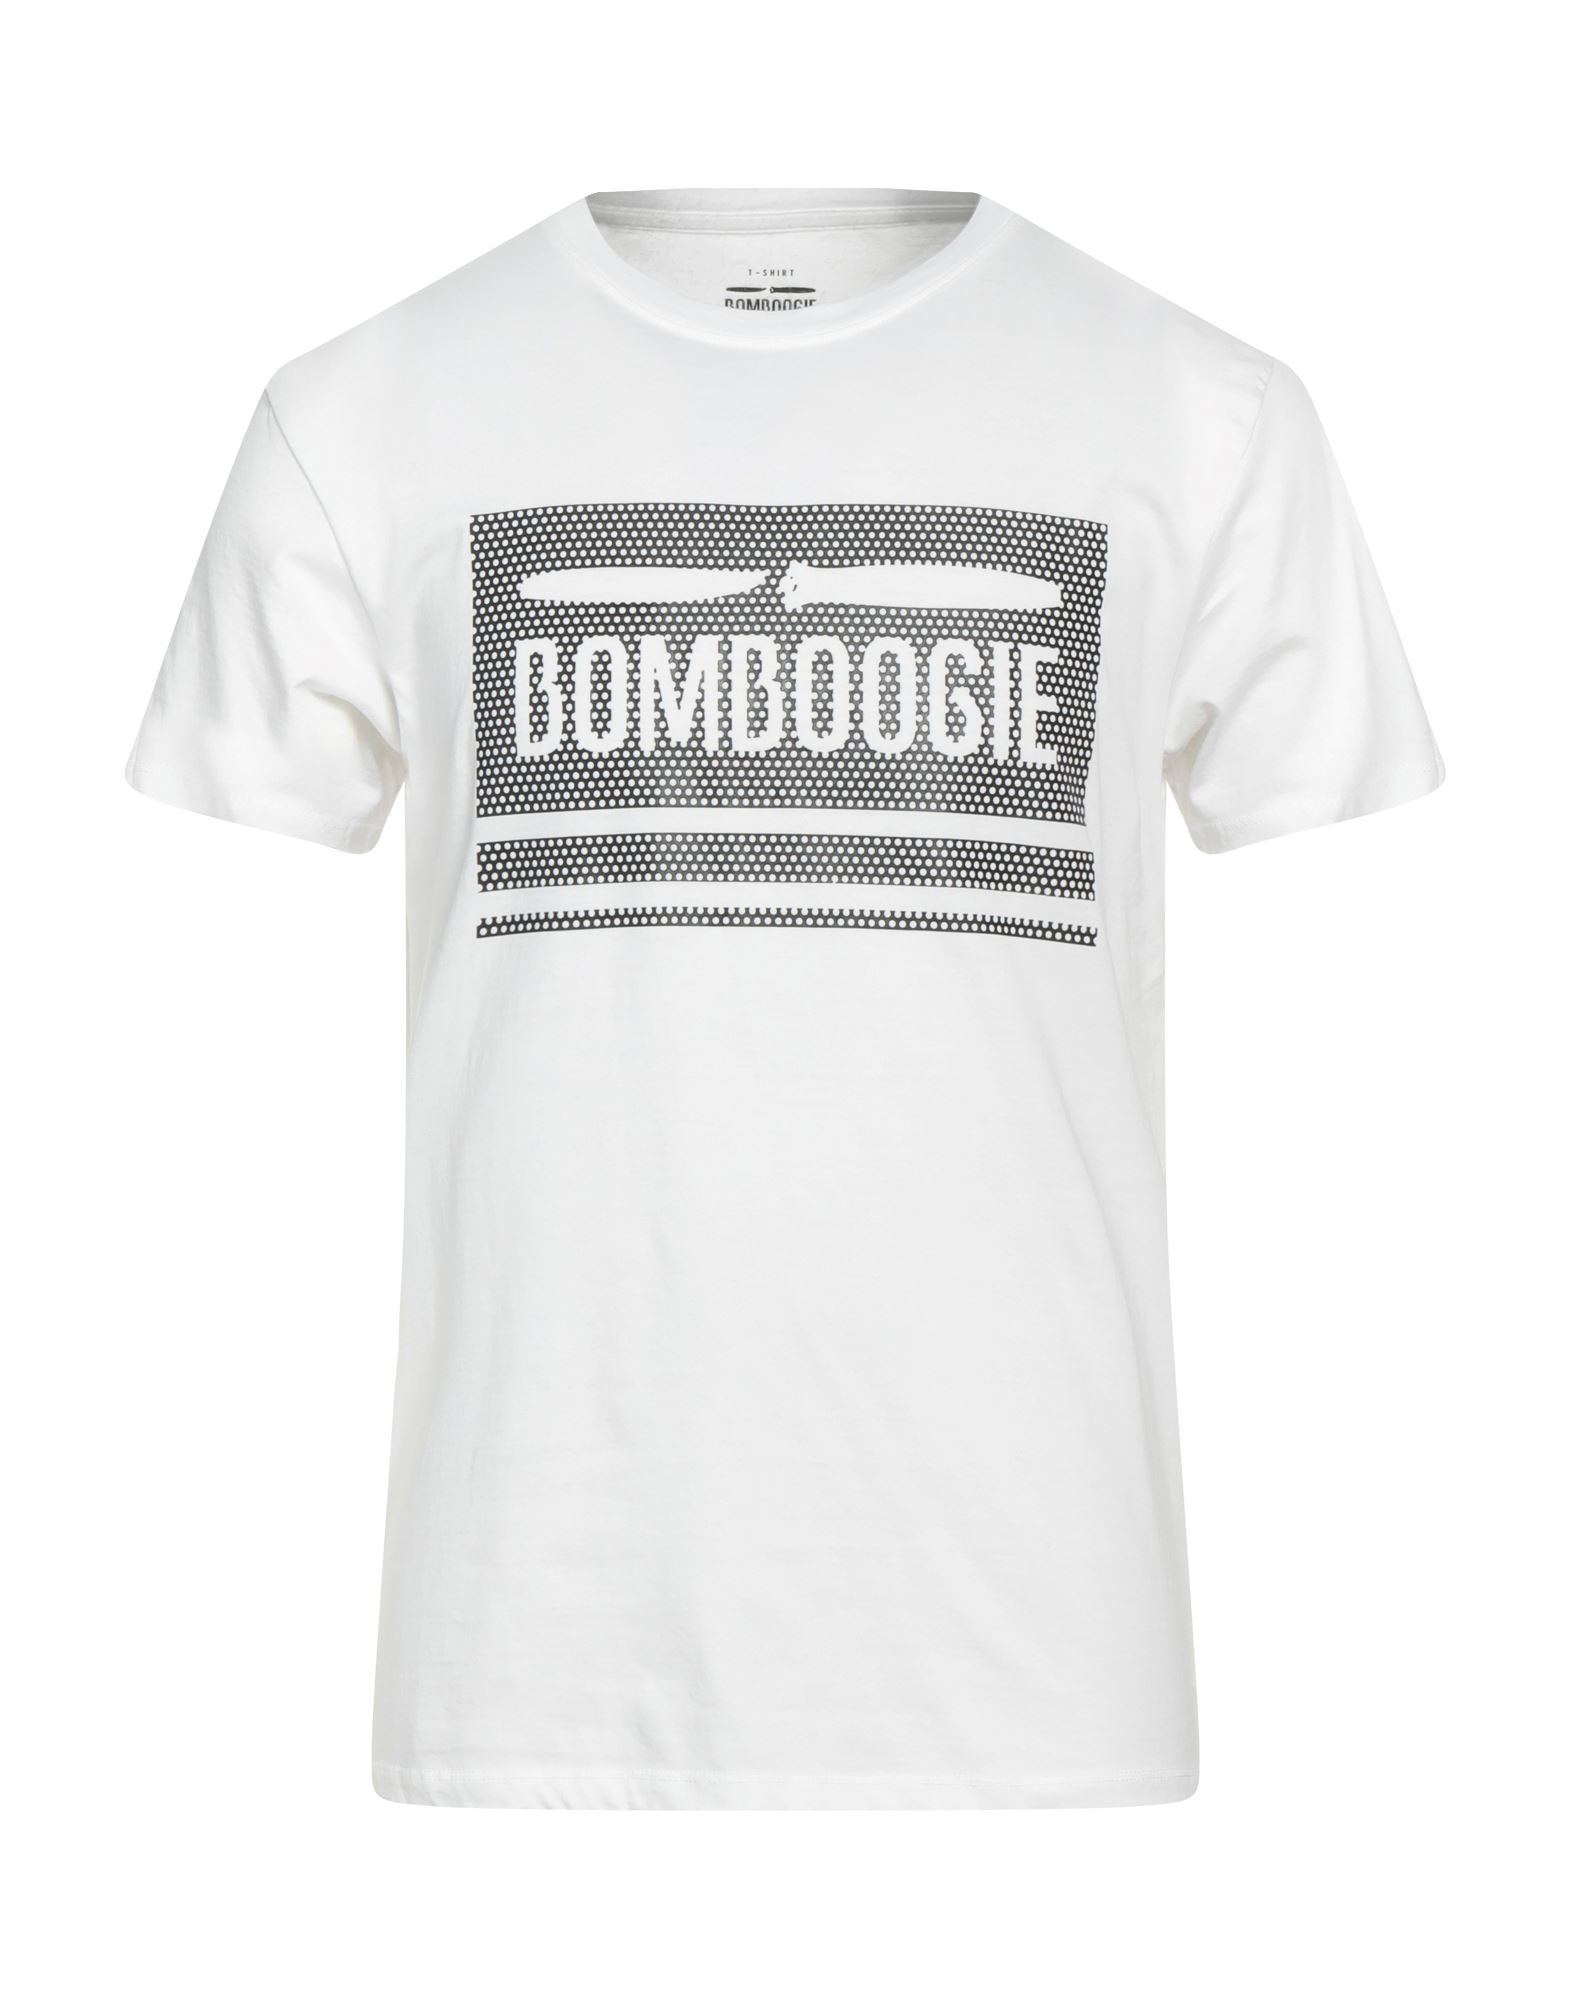 BOMBOOGIE T-shirts Herren Weiß von BOMBOOGIE